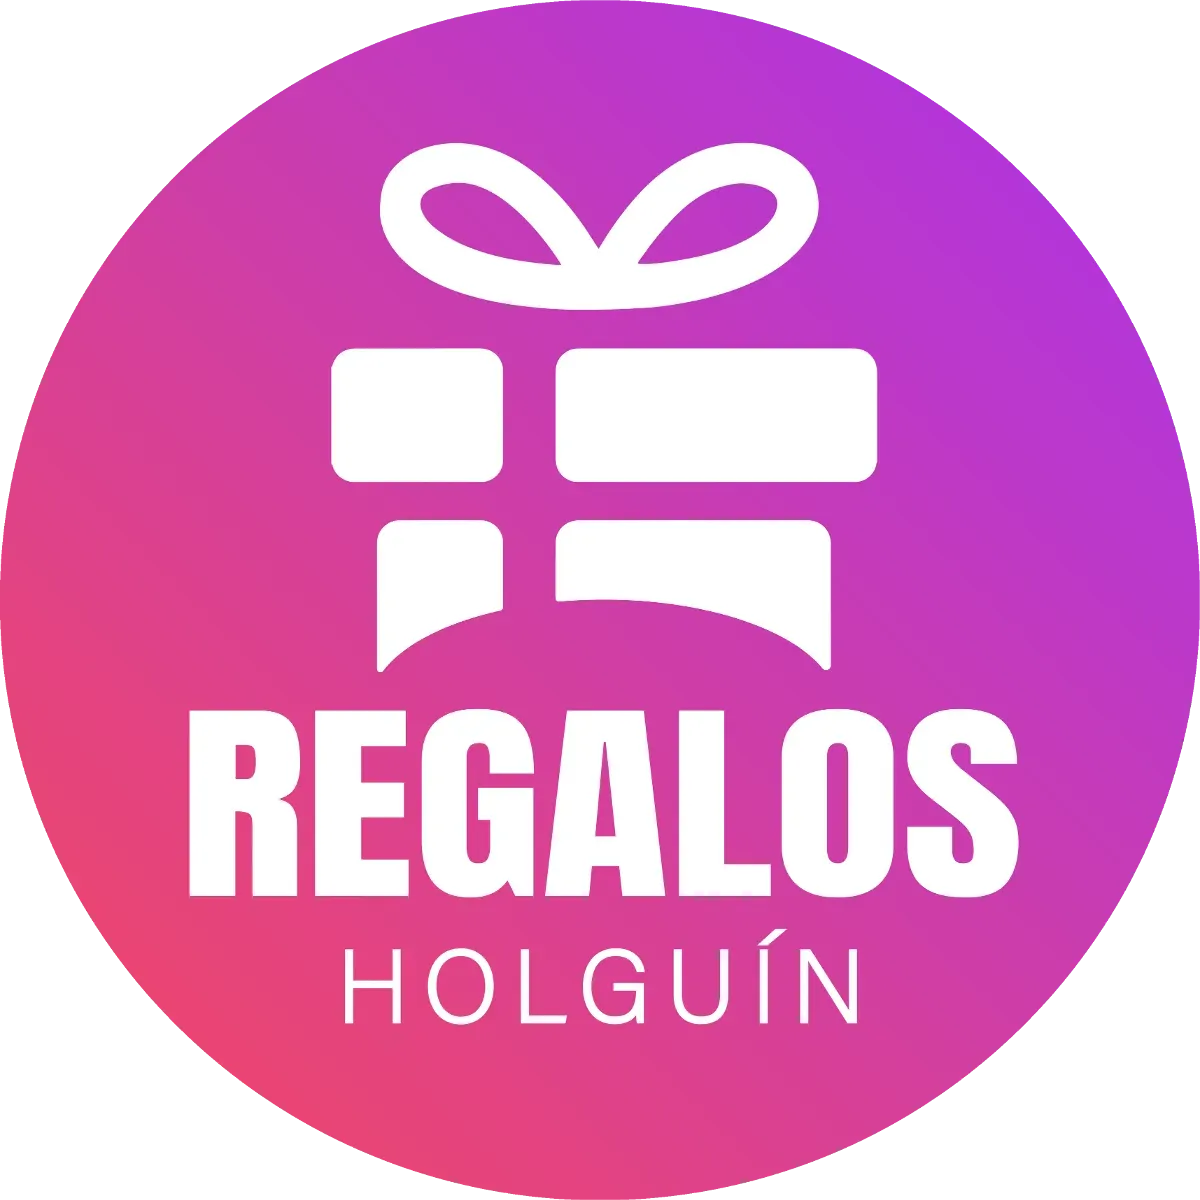 Regalos Holguín